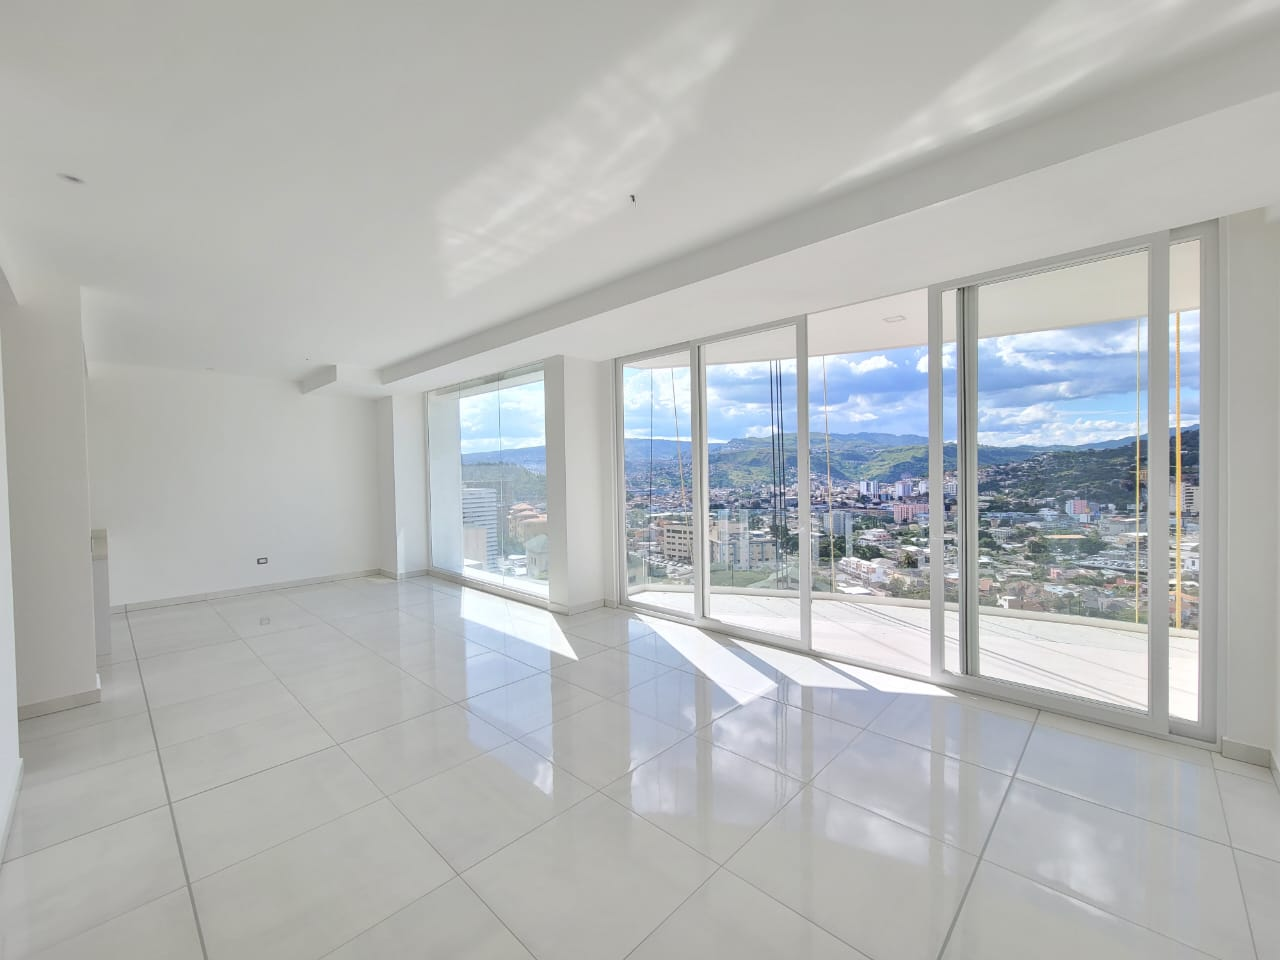 Apartamento en renta a estrenar, ubicado en torre Ambar, cuenta con una fachada de color crema calido, el apartamento cuenta con su propia terraza y 148 metros cuadrados.